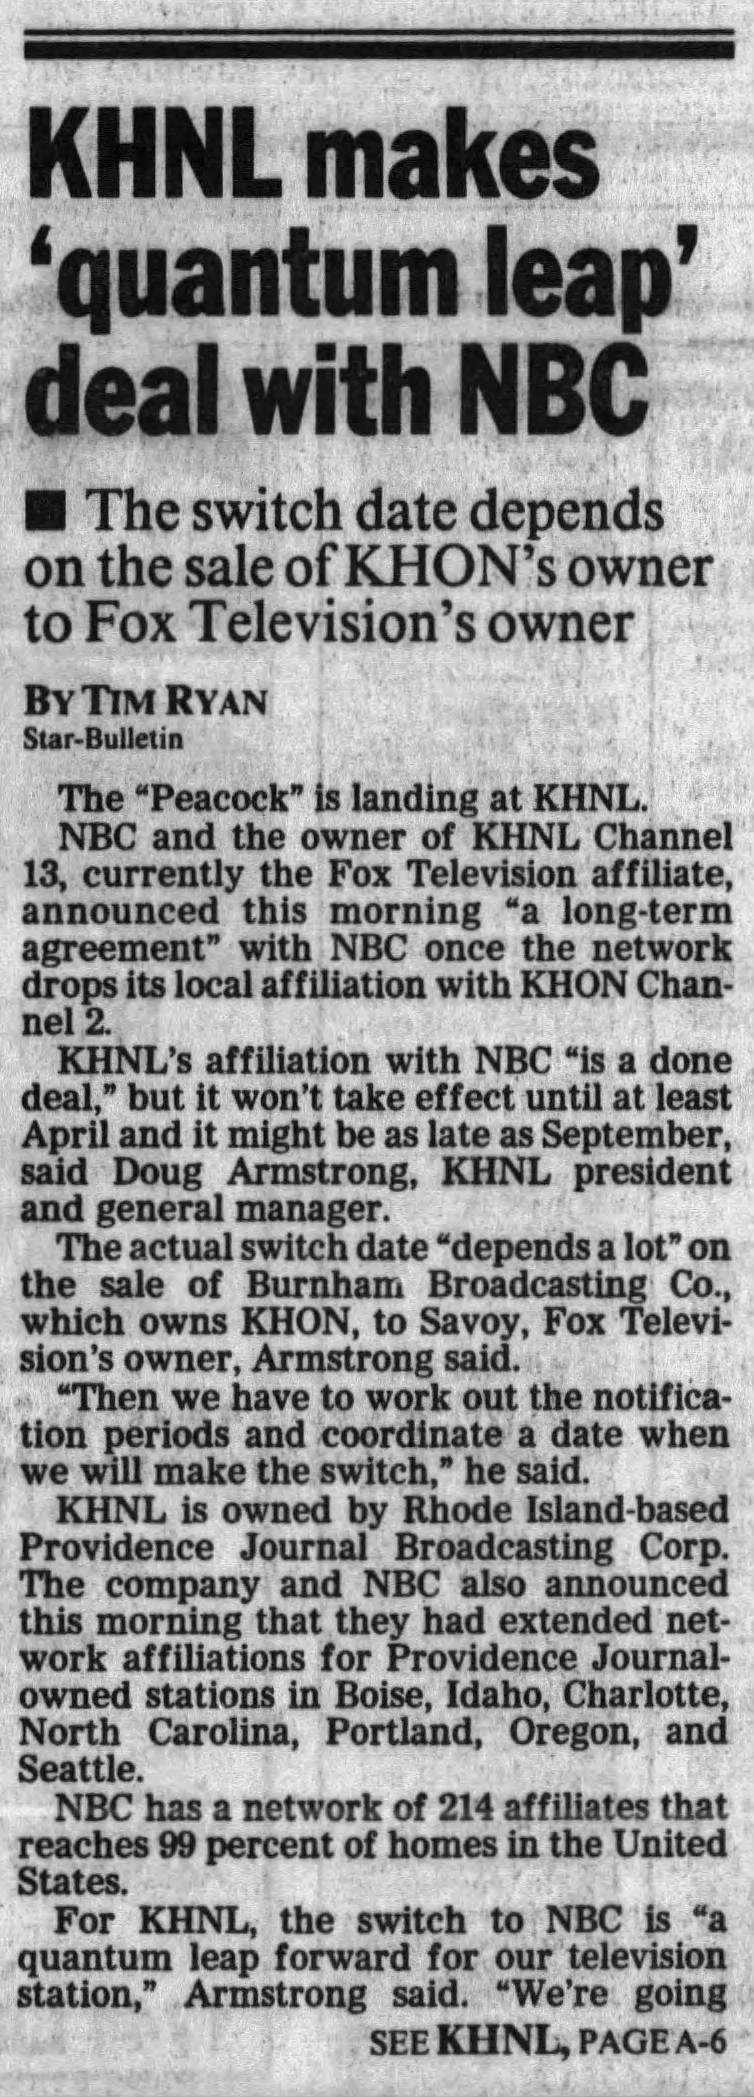 KHNL makes 'quantum leap' deal with NBC